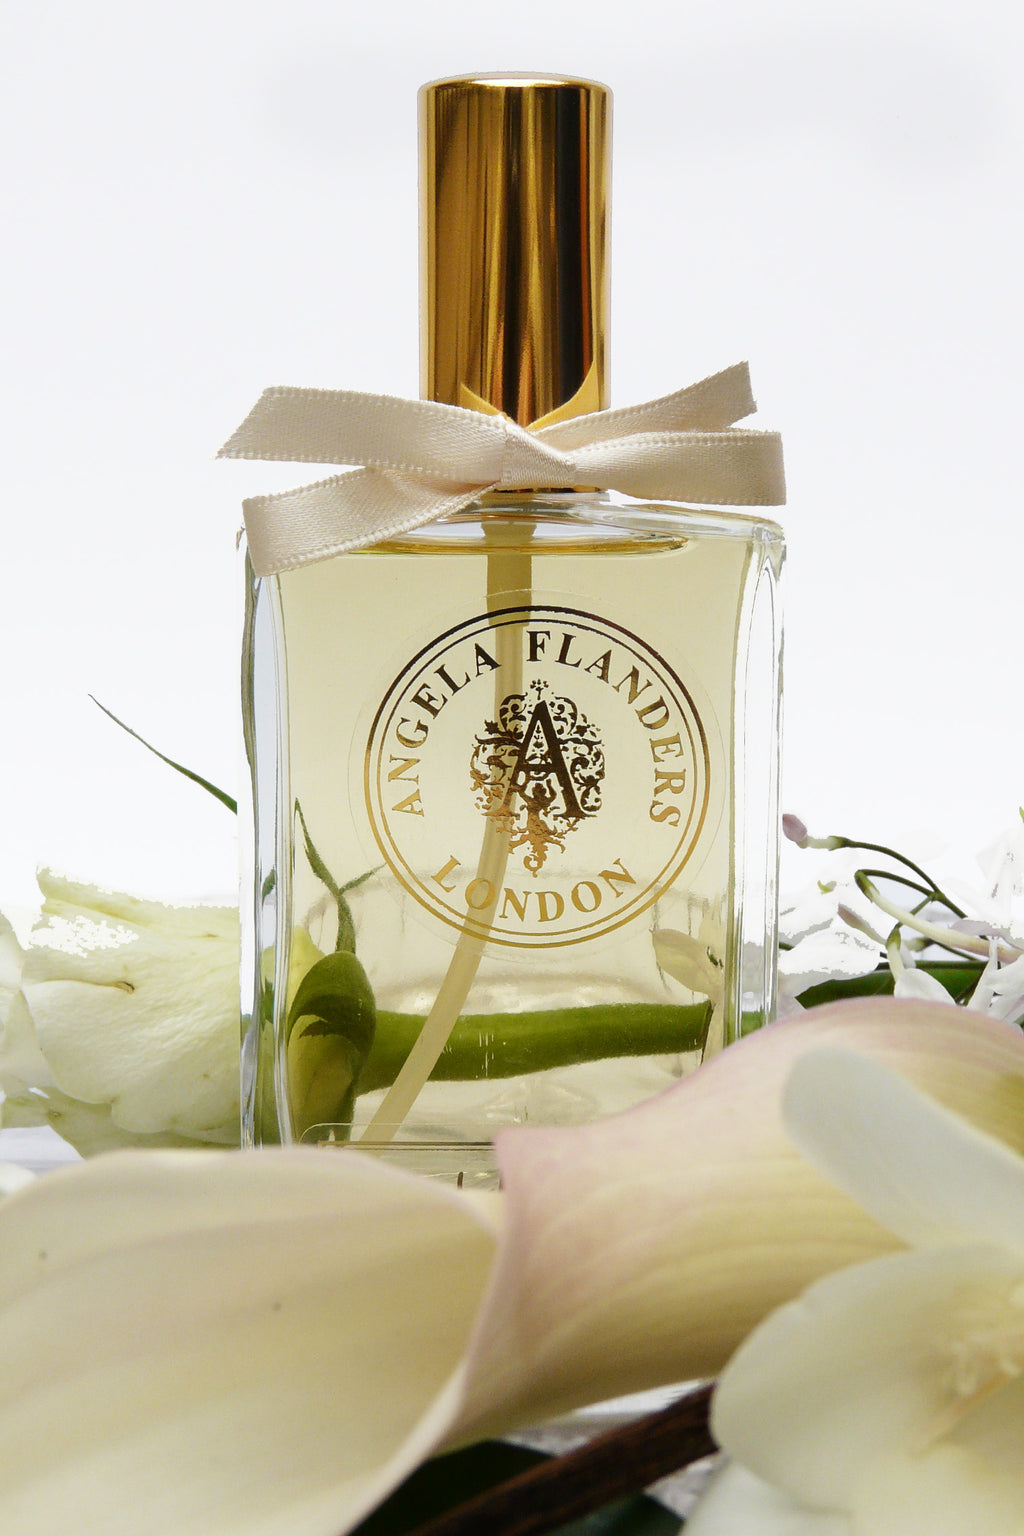 Angela Flanders Bouquet d'Amour Eau de Parfum 50ml